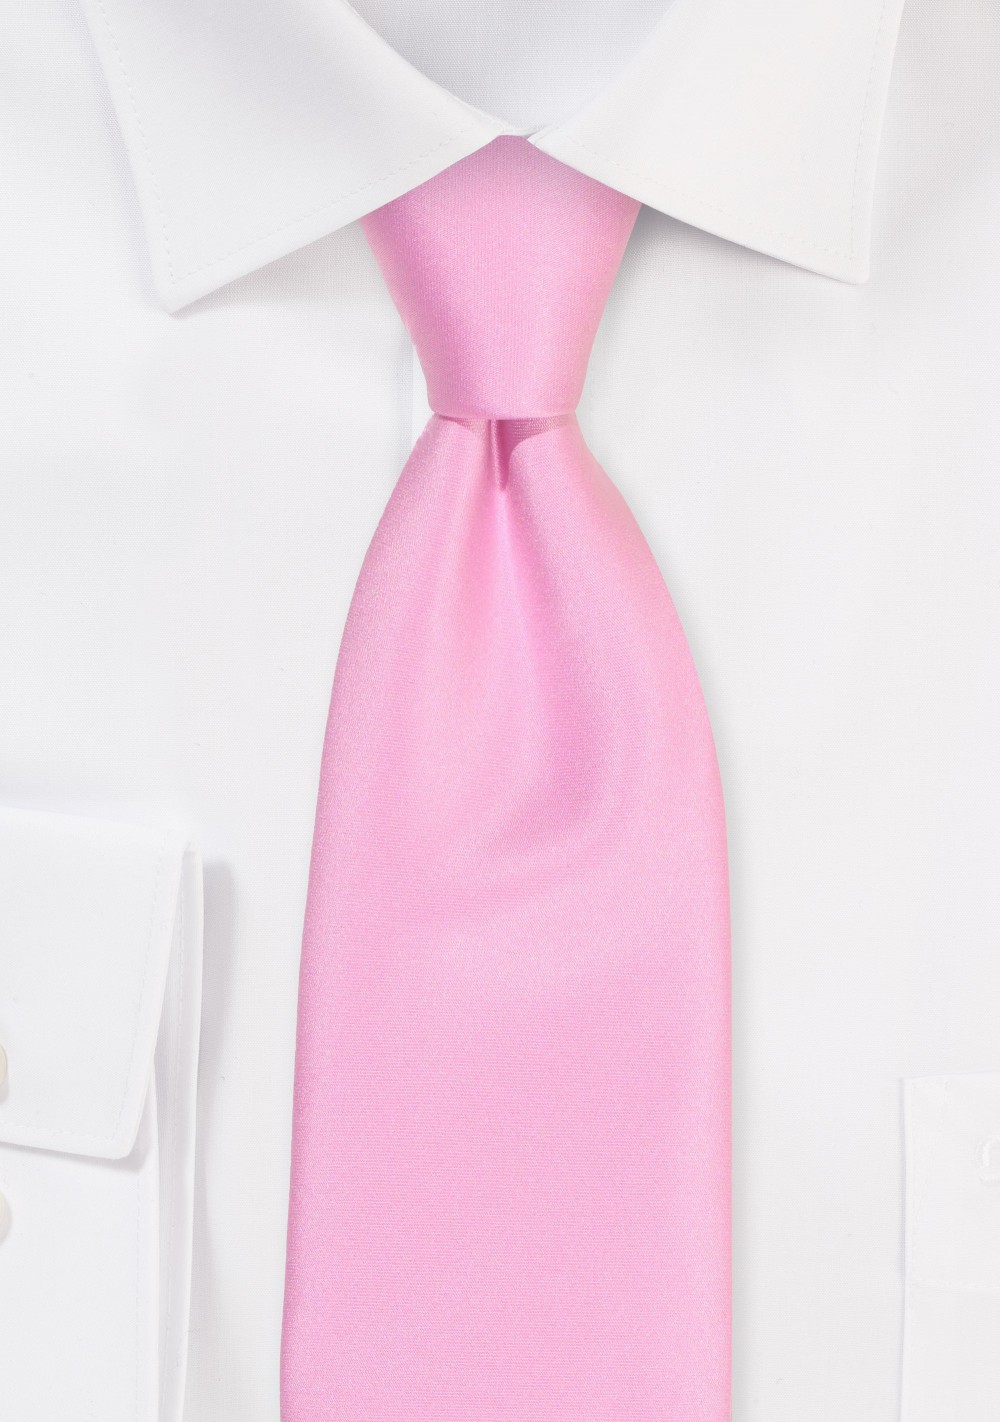 XL Satin Tie in Pink